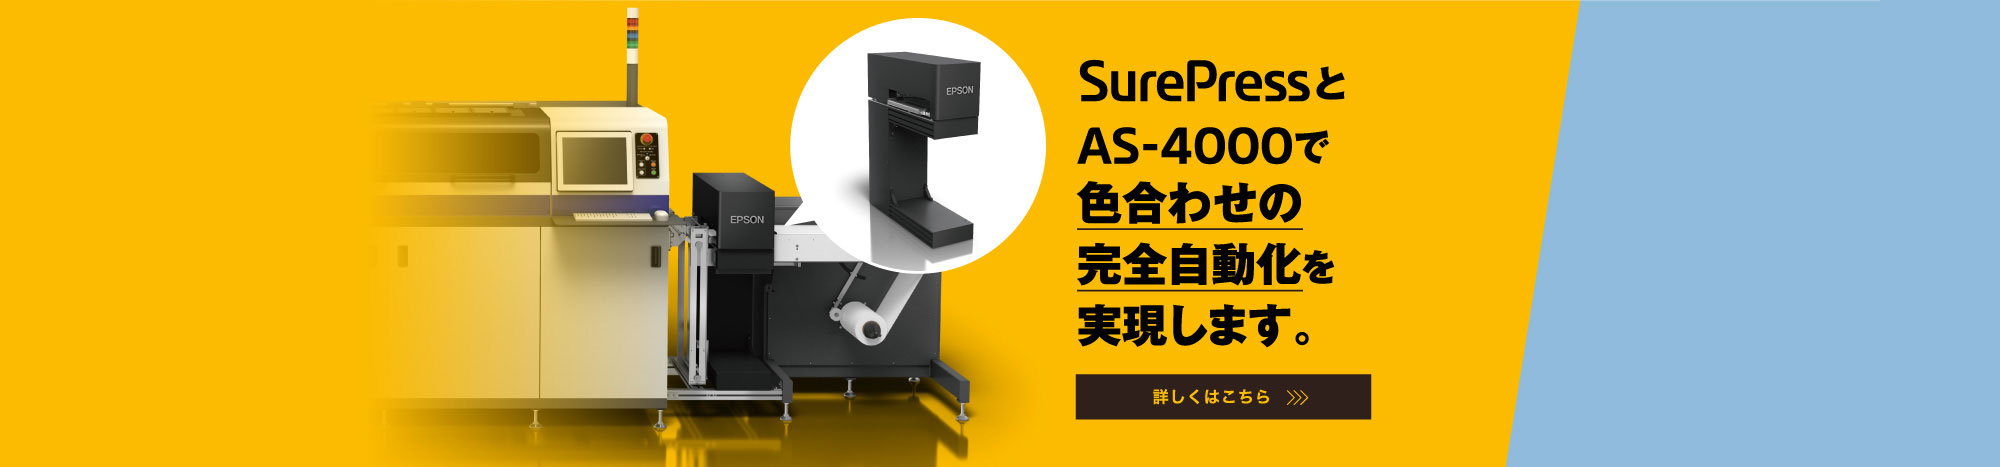 SurePressとAS-4000で色合わせの完全自動化を実現します。 詳しくはこちら